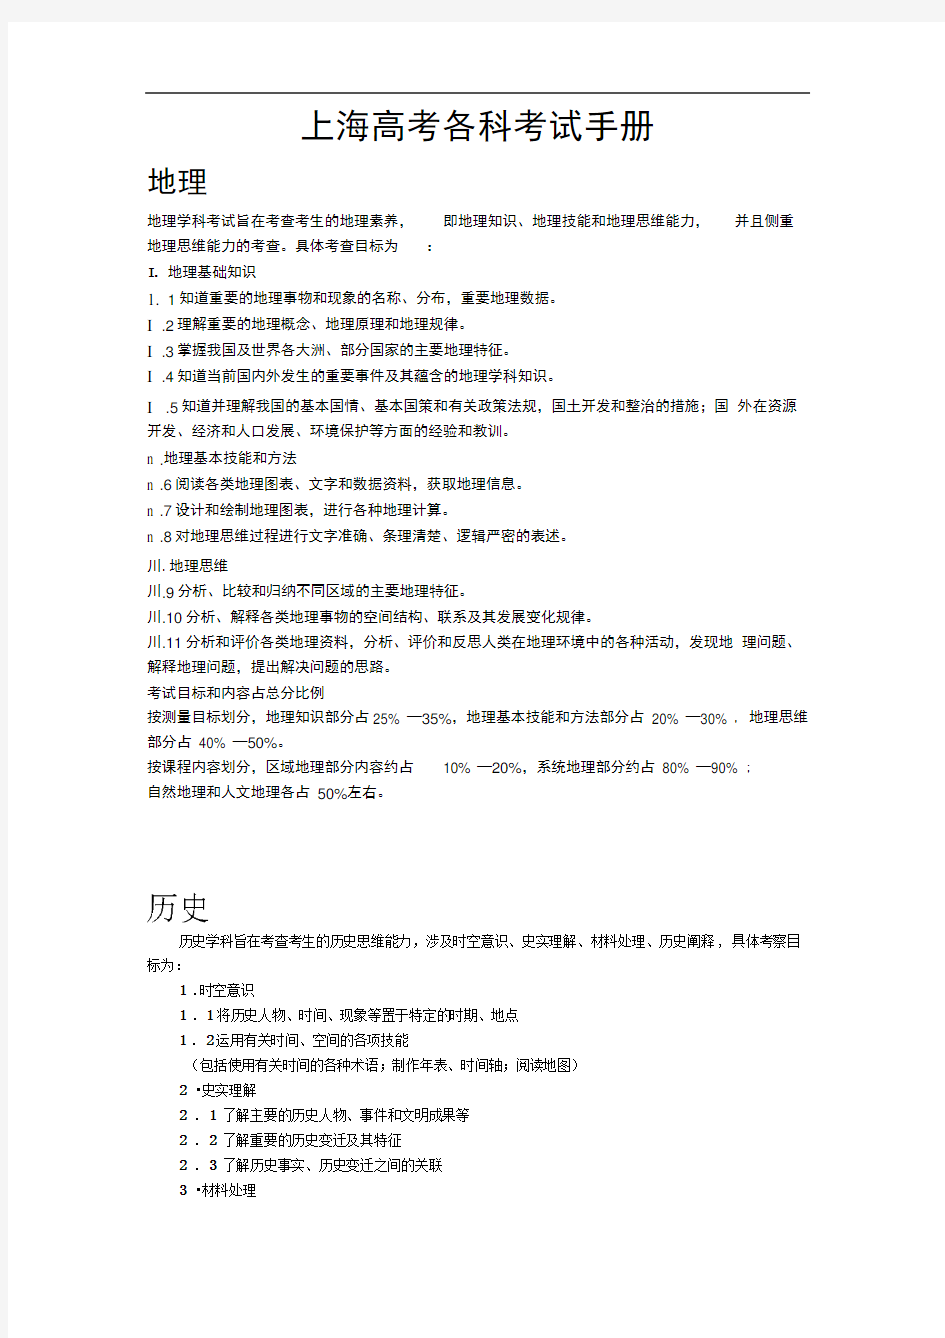 上海中高考各科考试手册